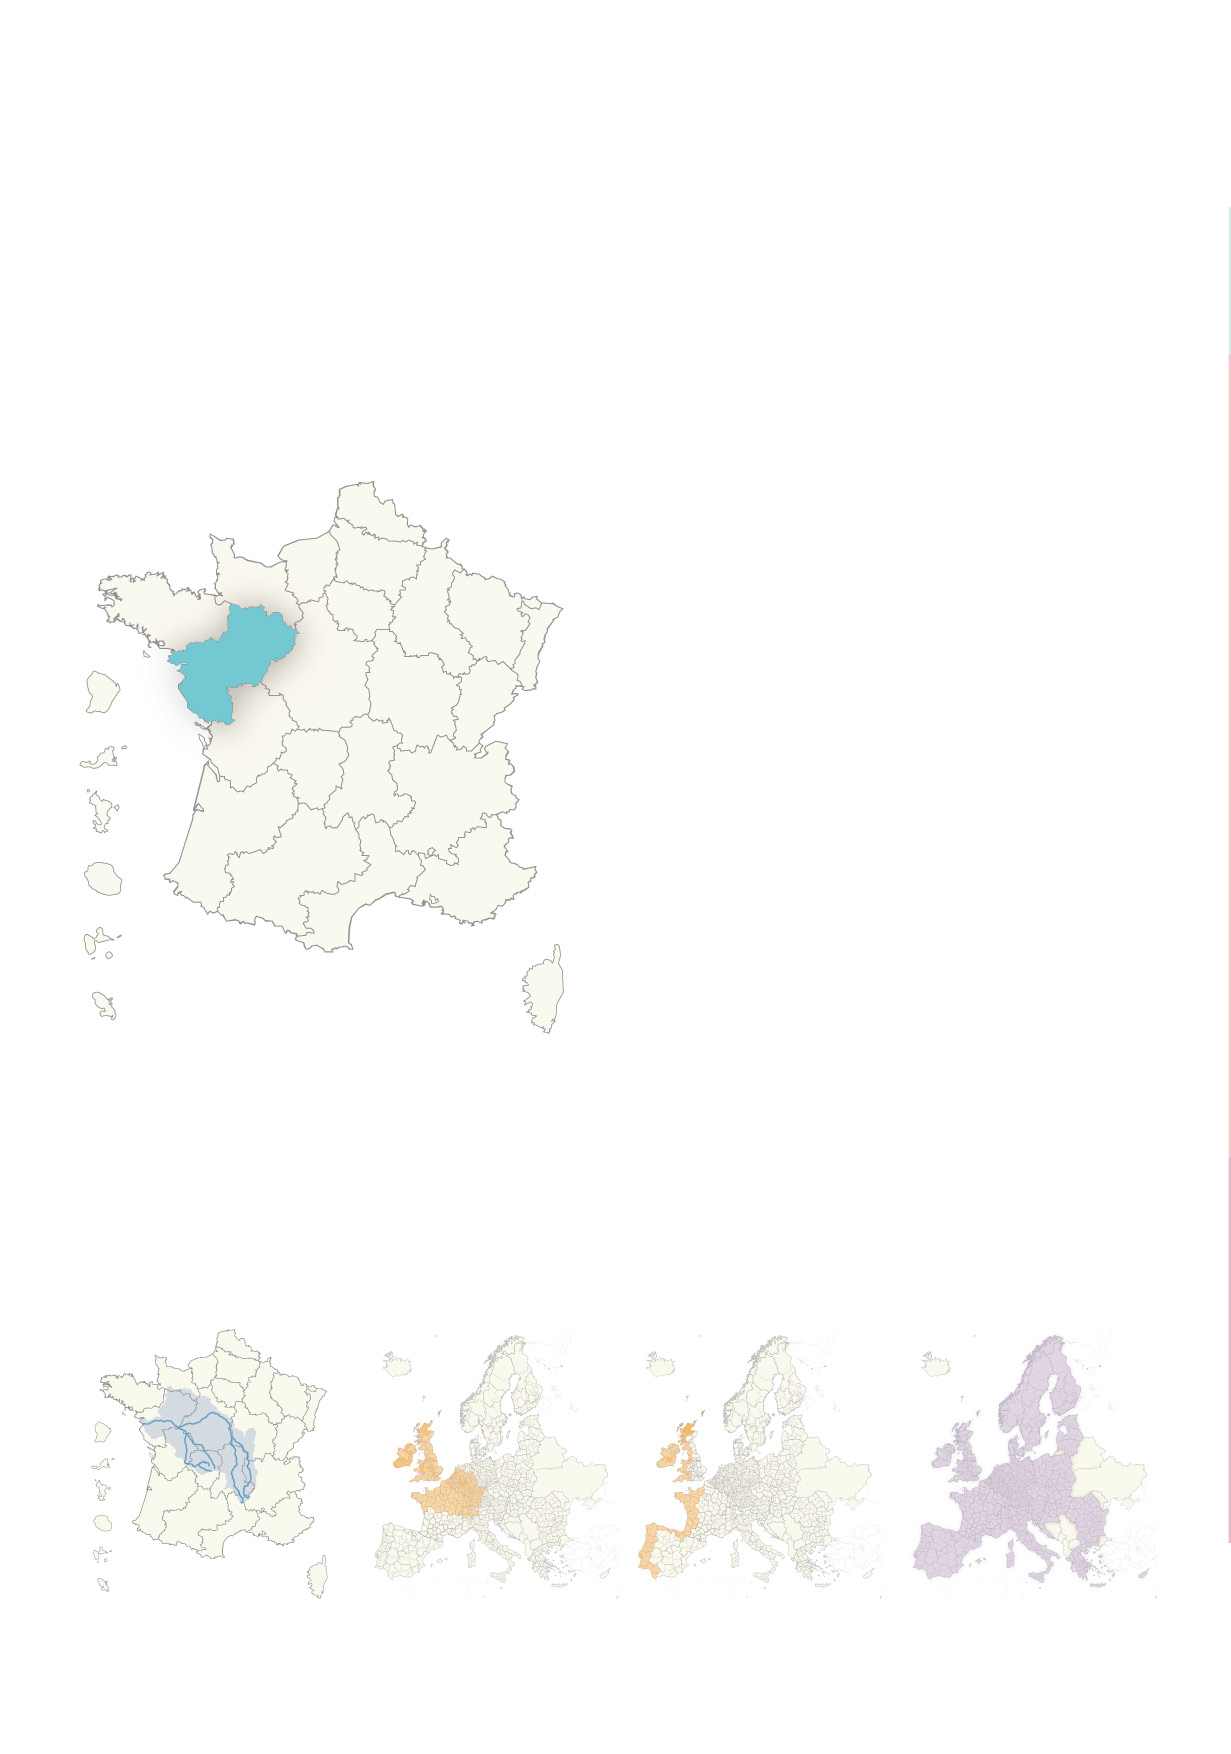 PROGRAMMES ET MONTANTS Les montants ci-dessous concernent le territoire de la région Pays de la Loire.